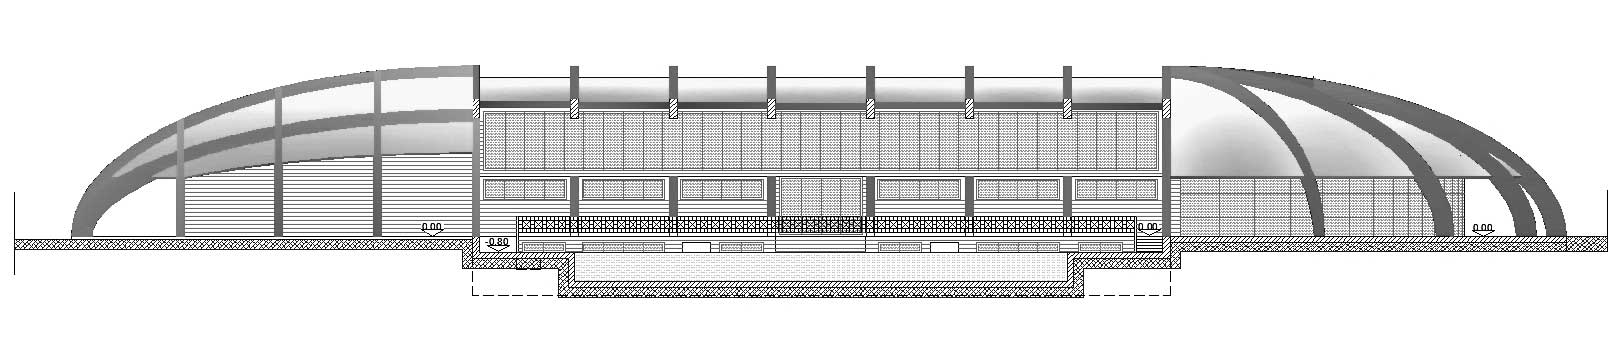 21 - Progetto preliminare di impianto sportivo in via della Moschea, Roma, per General Properties Asset Management SpA - Sezione longitudinale